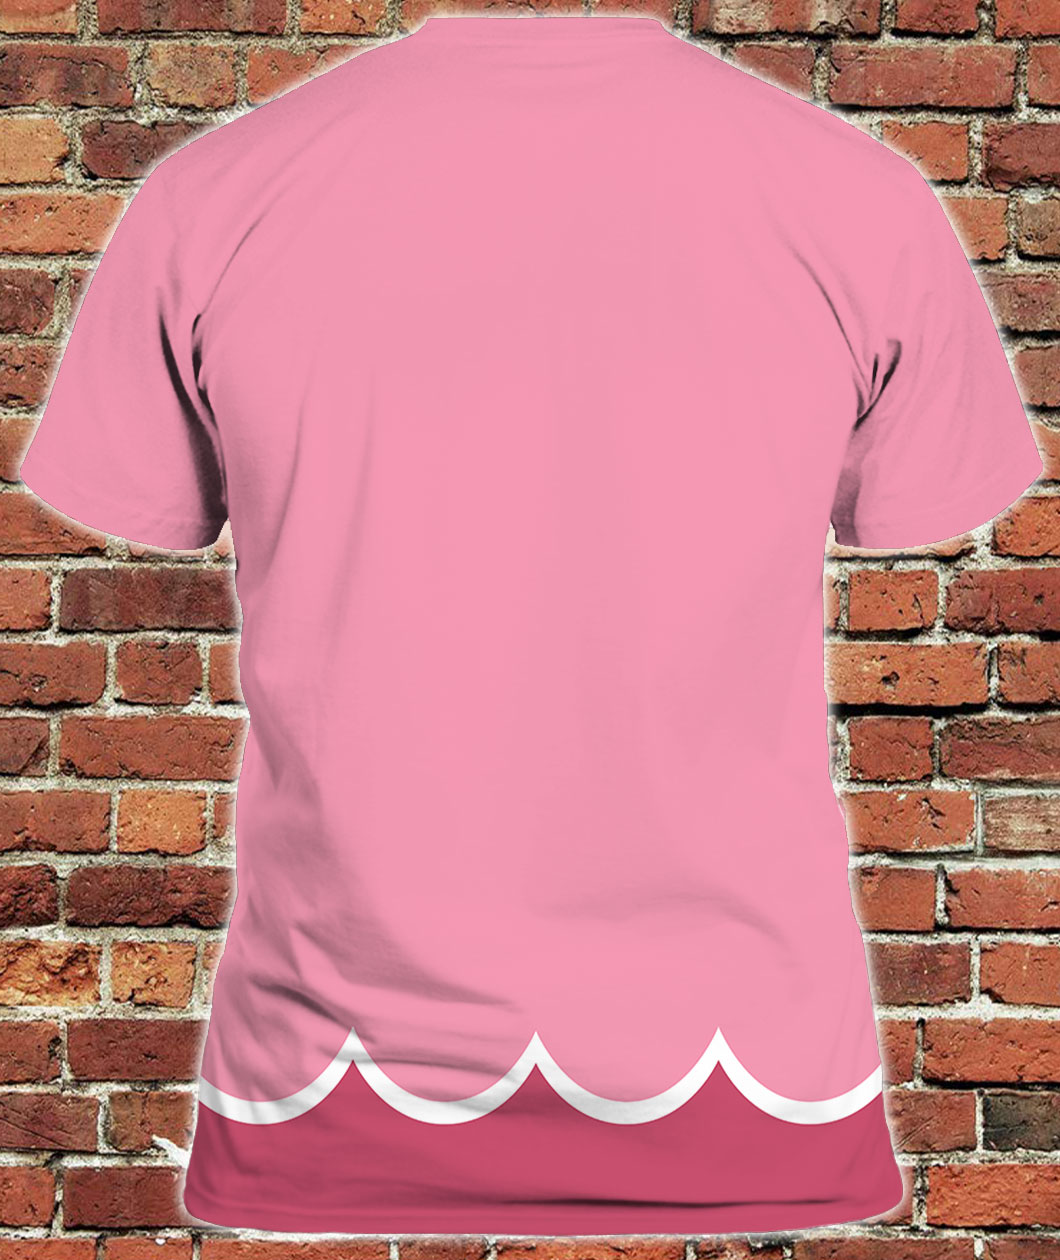 Peach's Gym - Princess Peach T-Shirt - The Shirt List